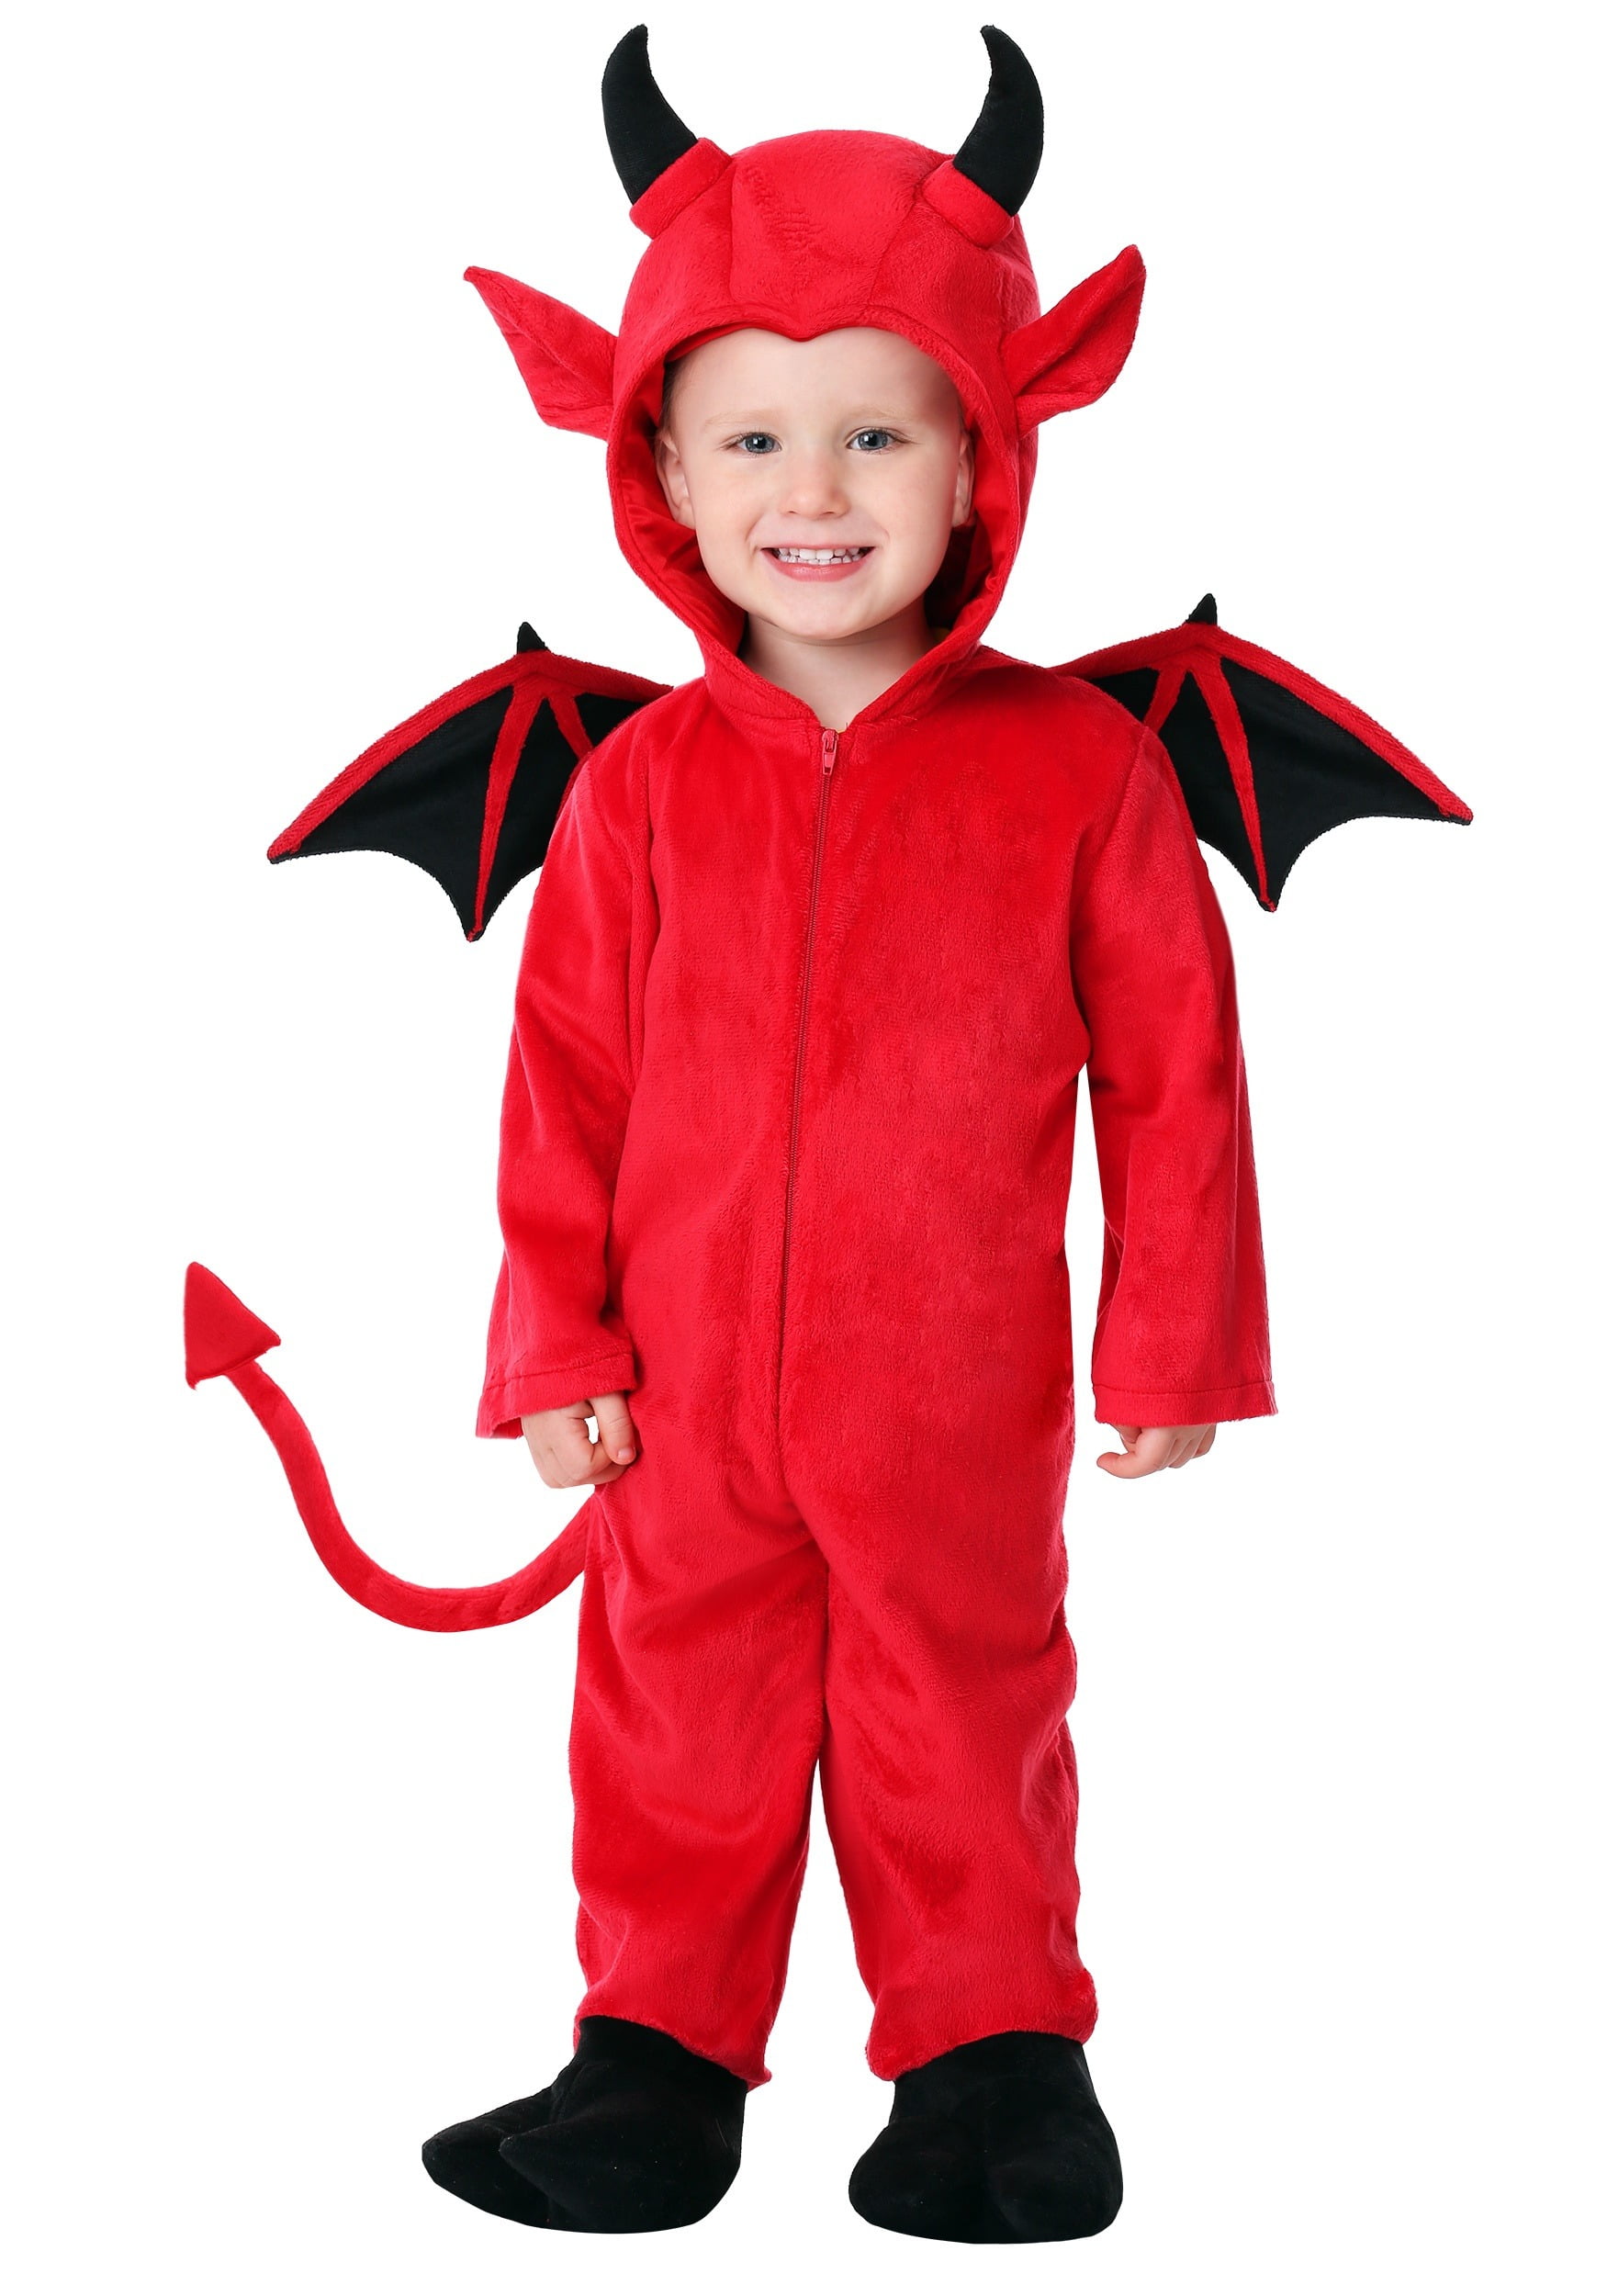 Little Crudelia Demon  Halloween costume contest, Cool halloween costumes,  Halloween costumes for kids